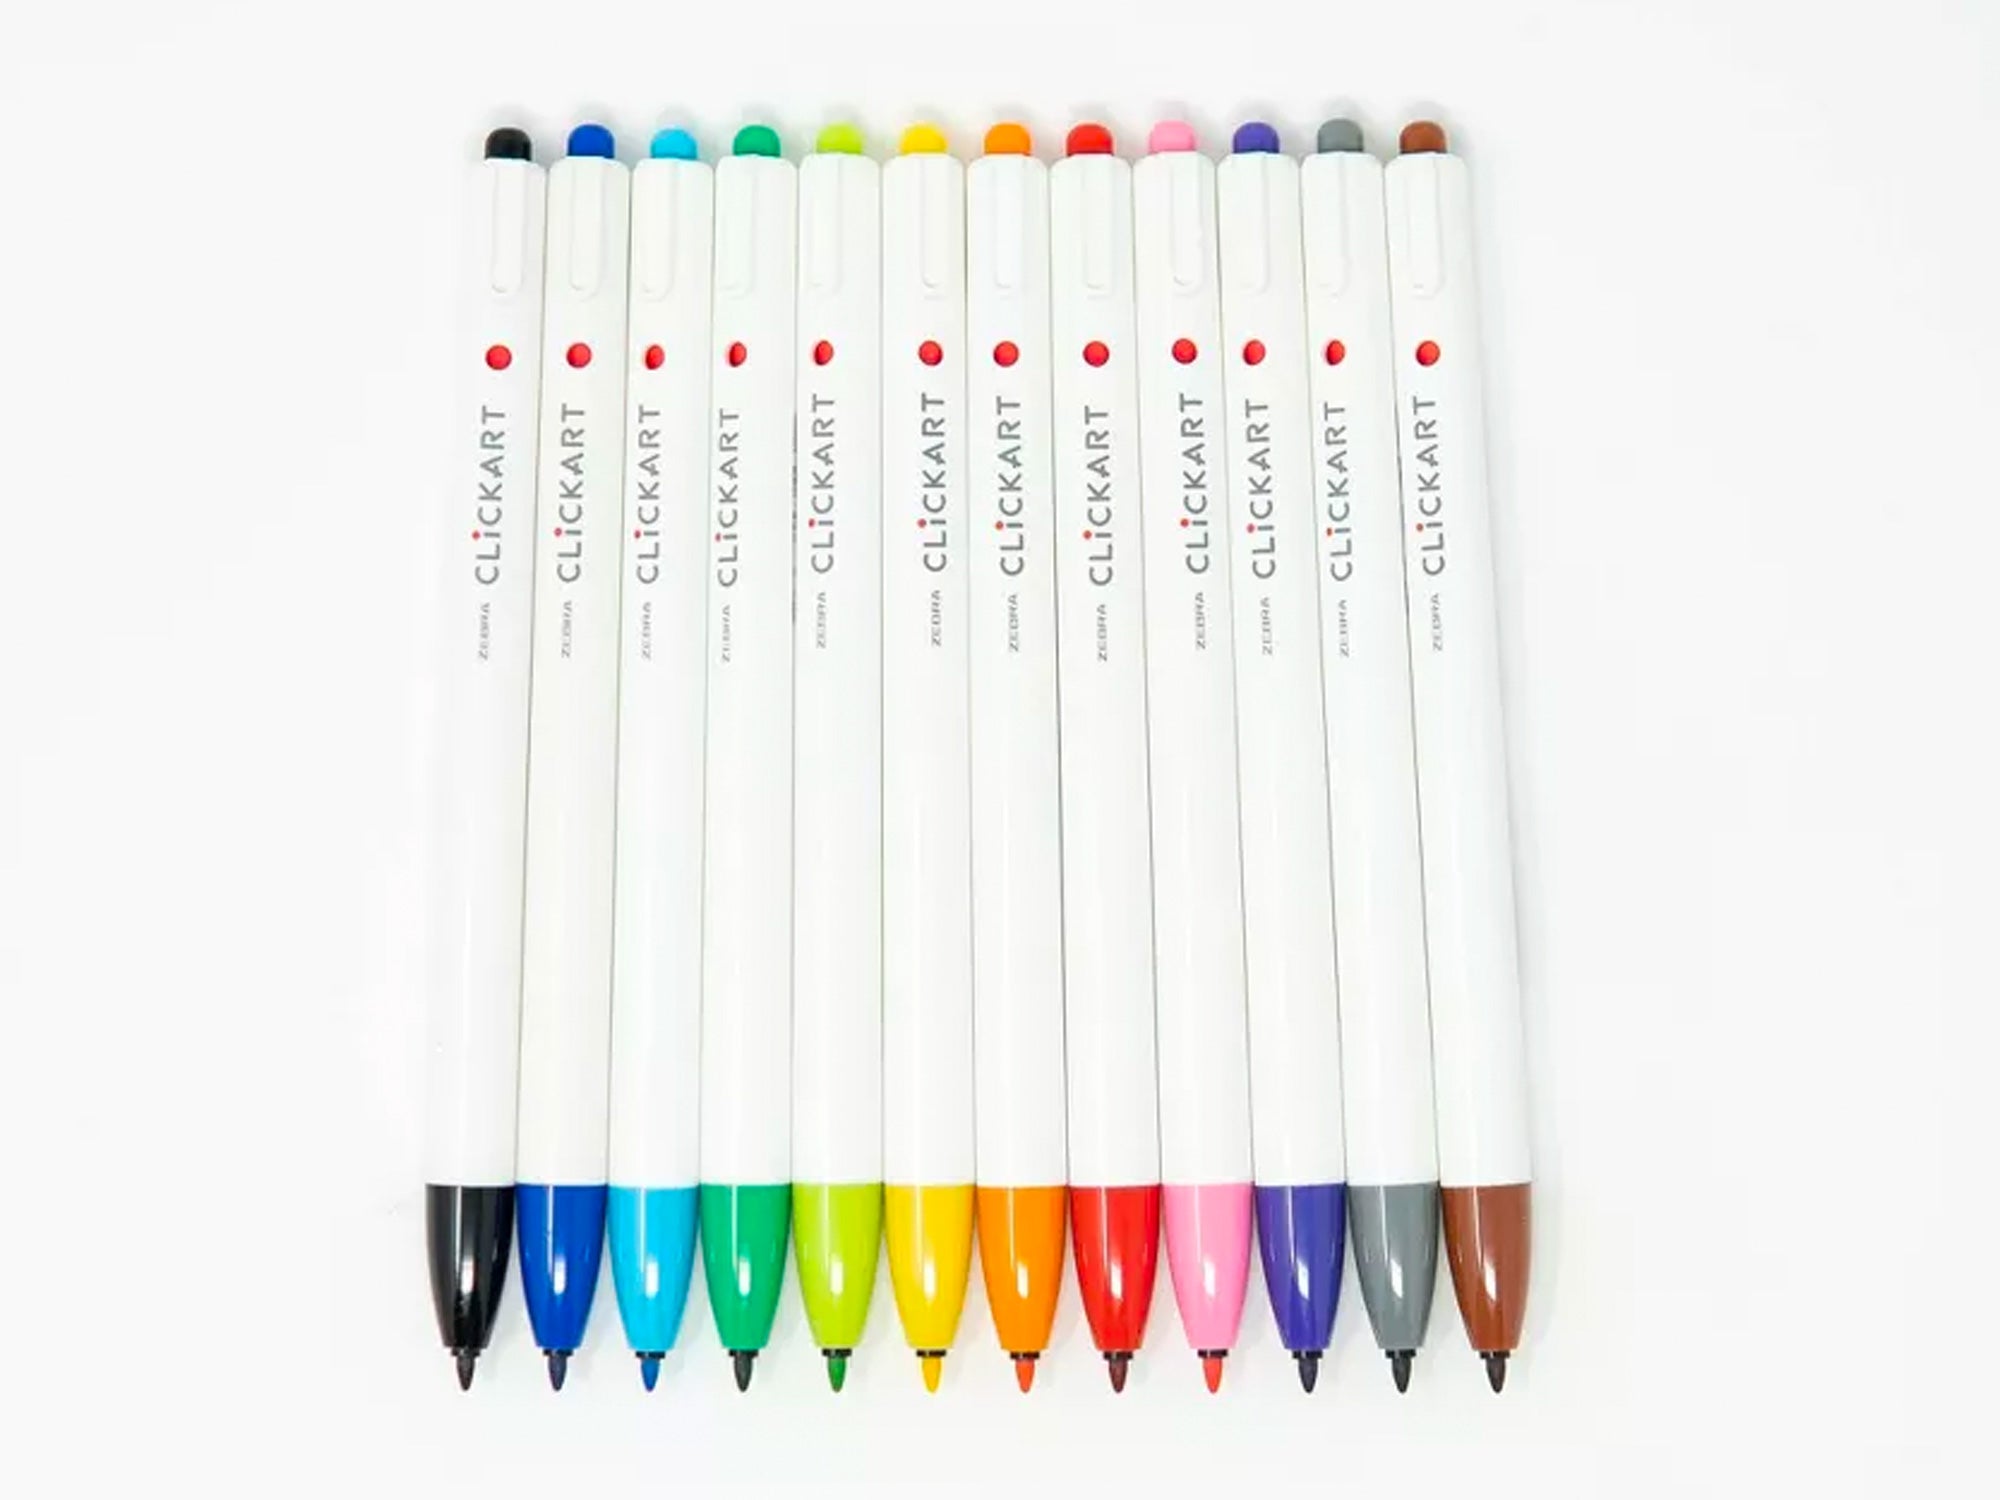 Zebra ClickArt Retractable Marker Pens Set of 12 - Light